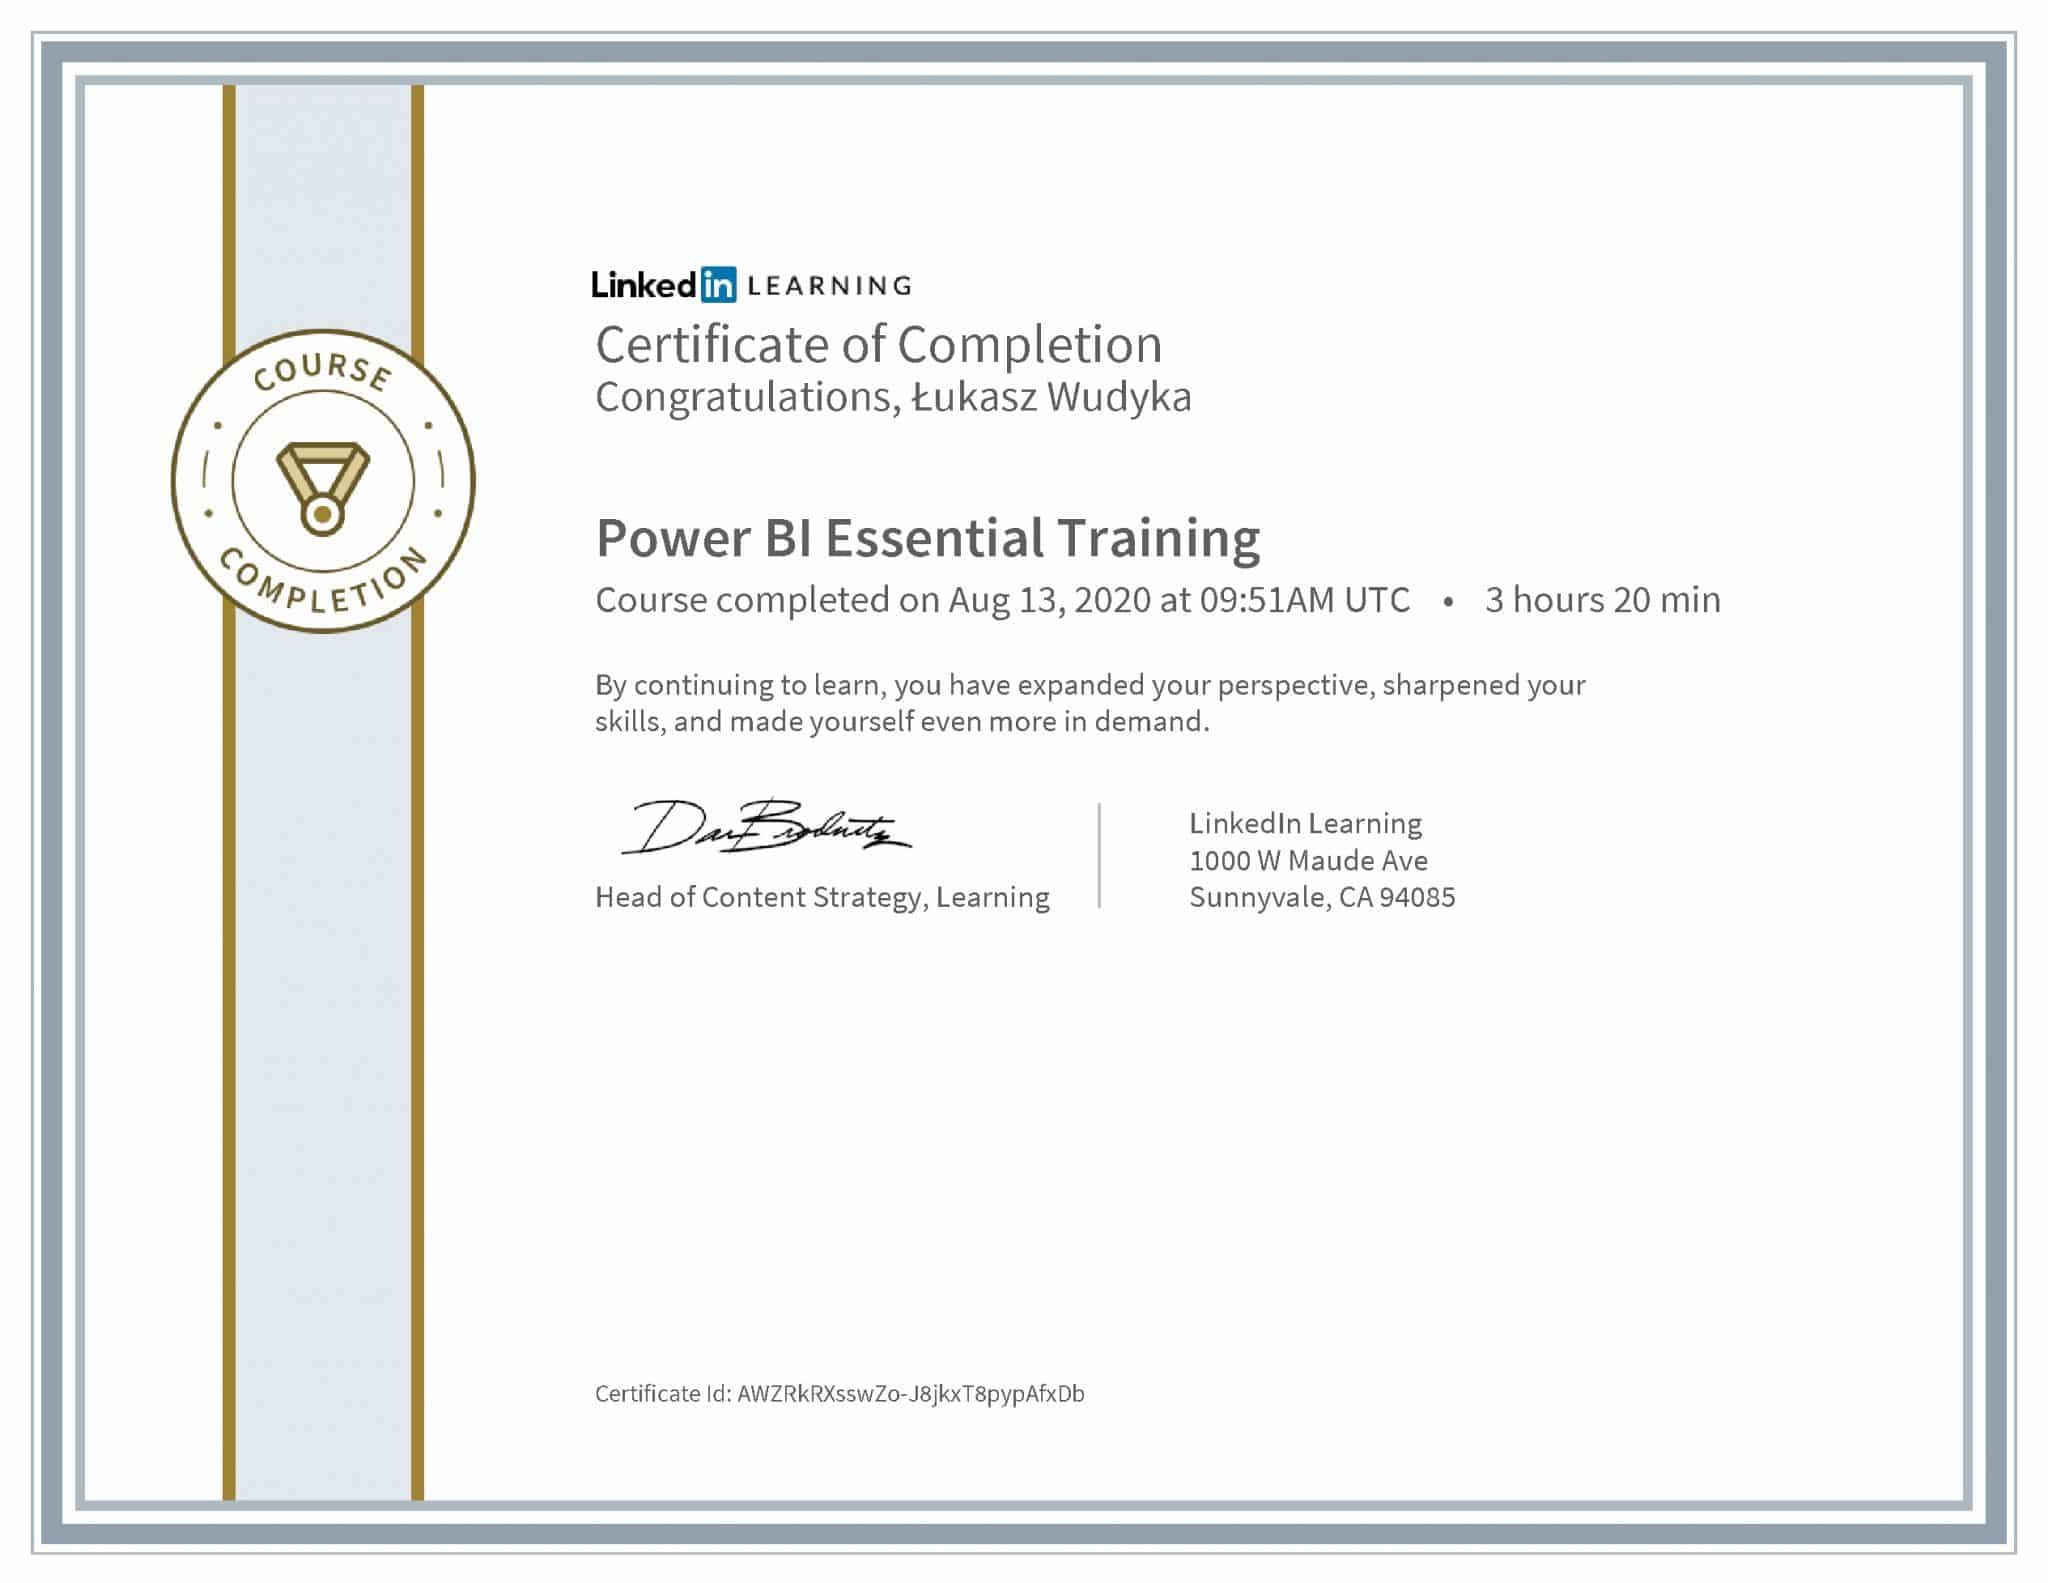 Łukasz Wudyka certyfikat LinkedIn Power BI Essential Training